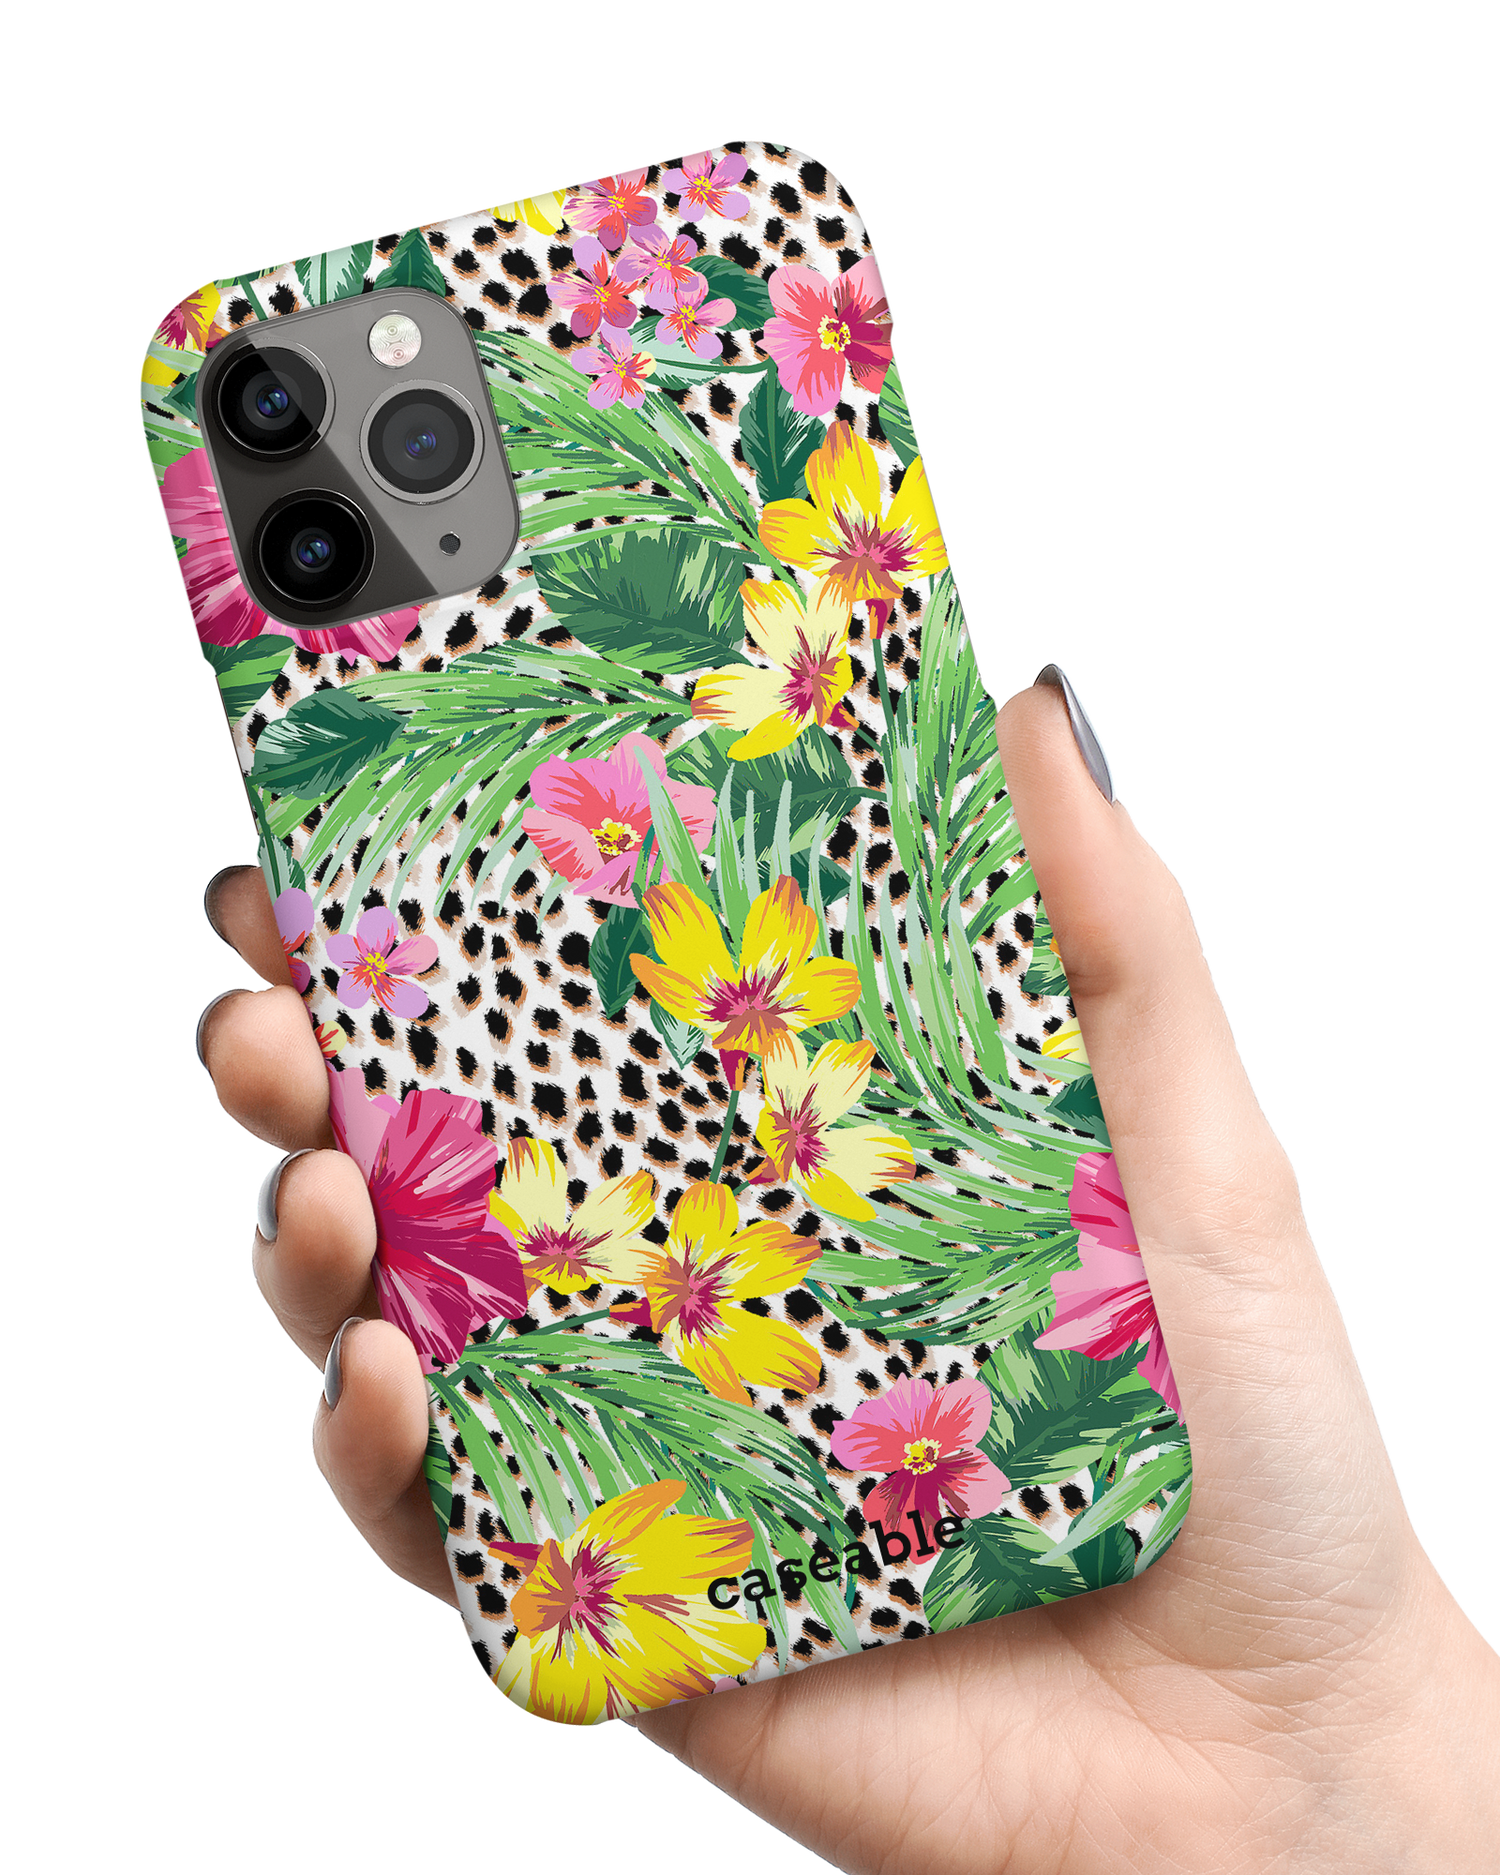 Tropical Cheetah Hardcase Handyhülle Apple iPhone 11 Pro in der Hand gehalten